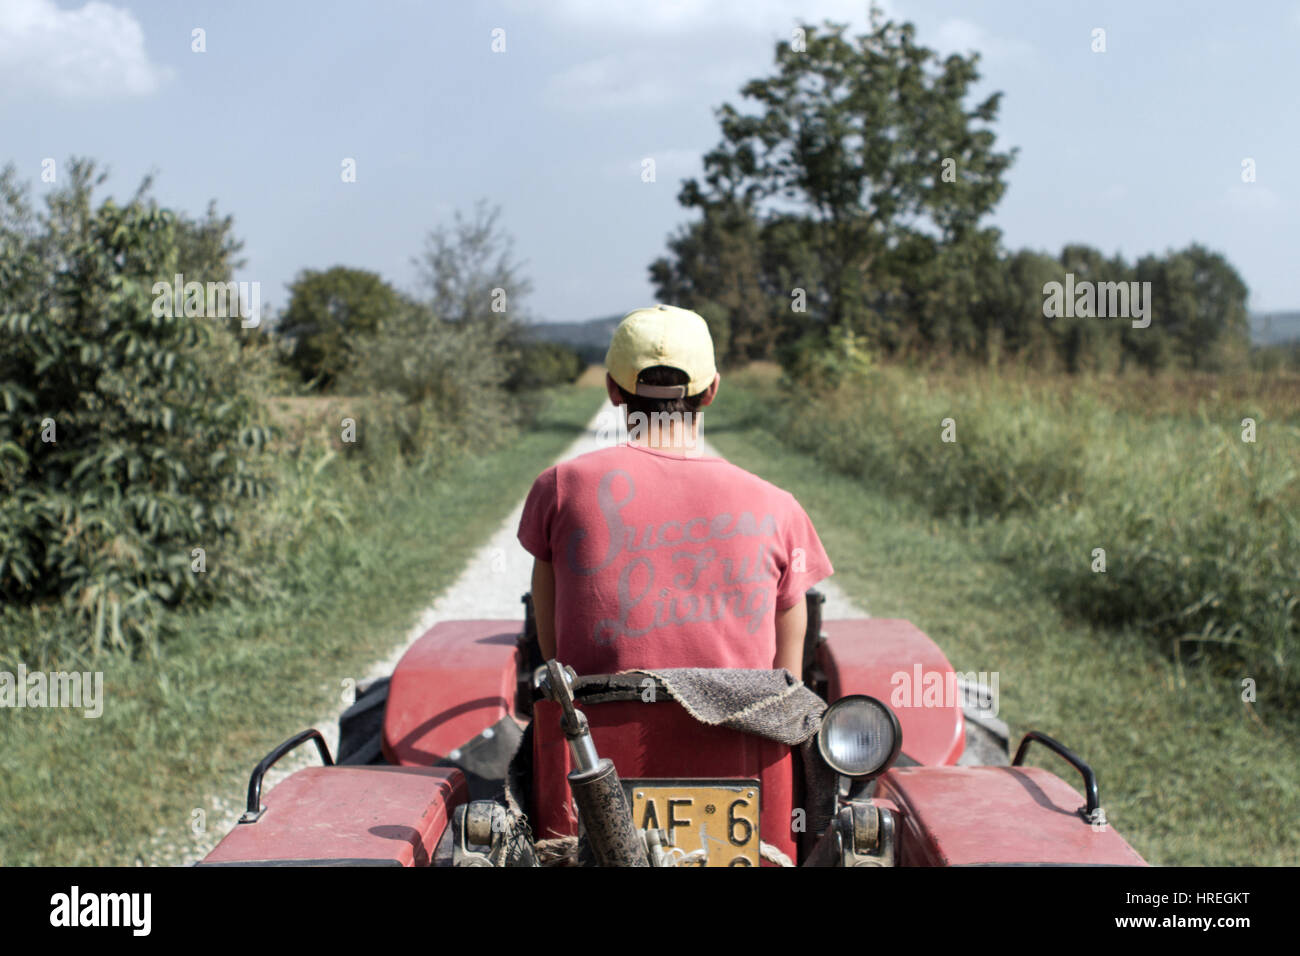 L'homme sur un tracteur foin récolte à Magliano Alfieri, qui est situé dans la province du Piémont, en Italie. Banque D'Images